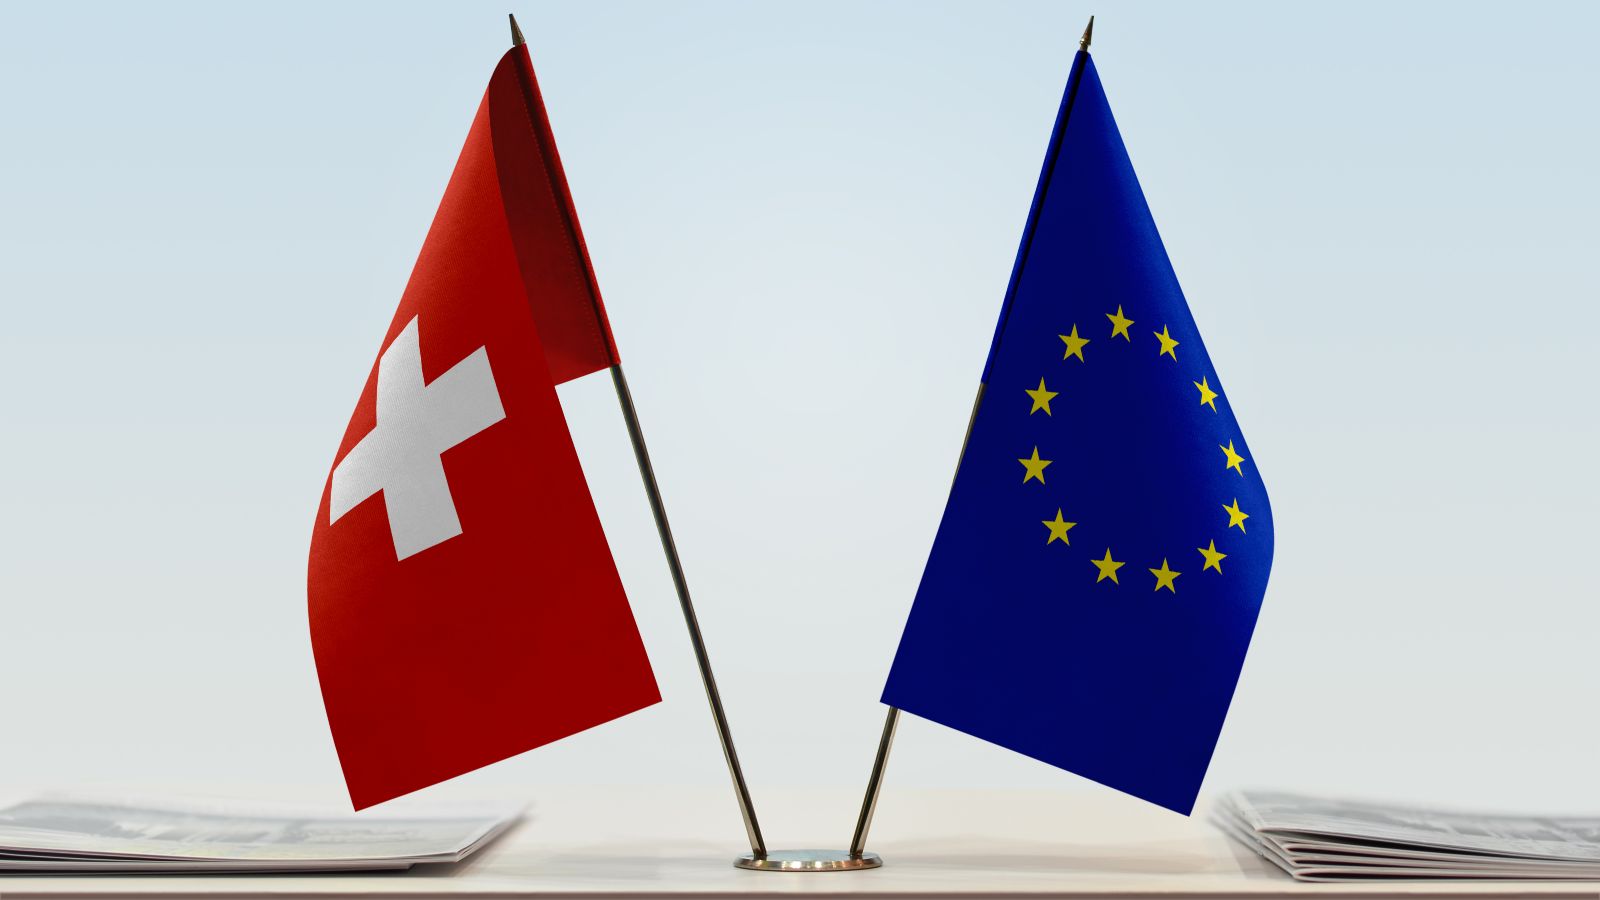 Flaggen der EU und der Schweiz stehen nebeneinander auf einem Tisch.